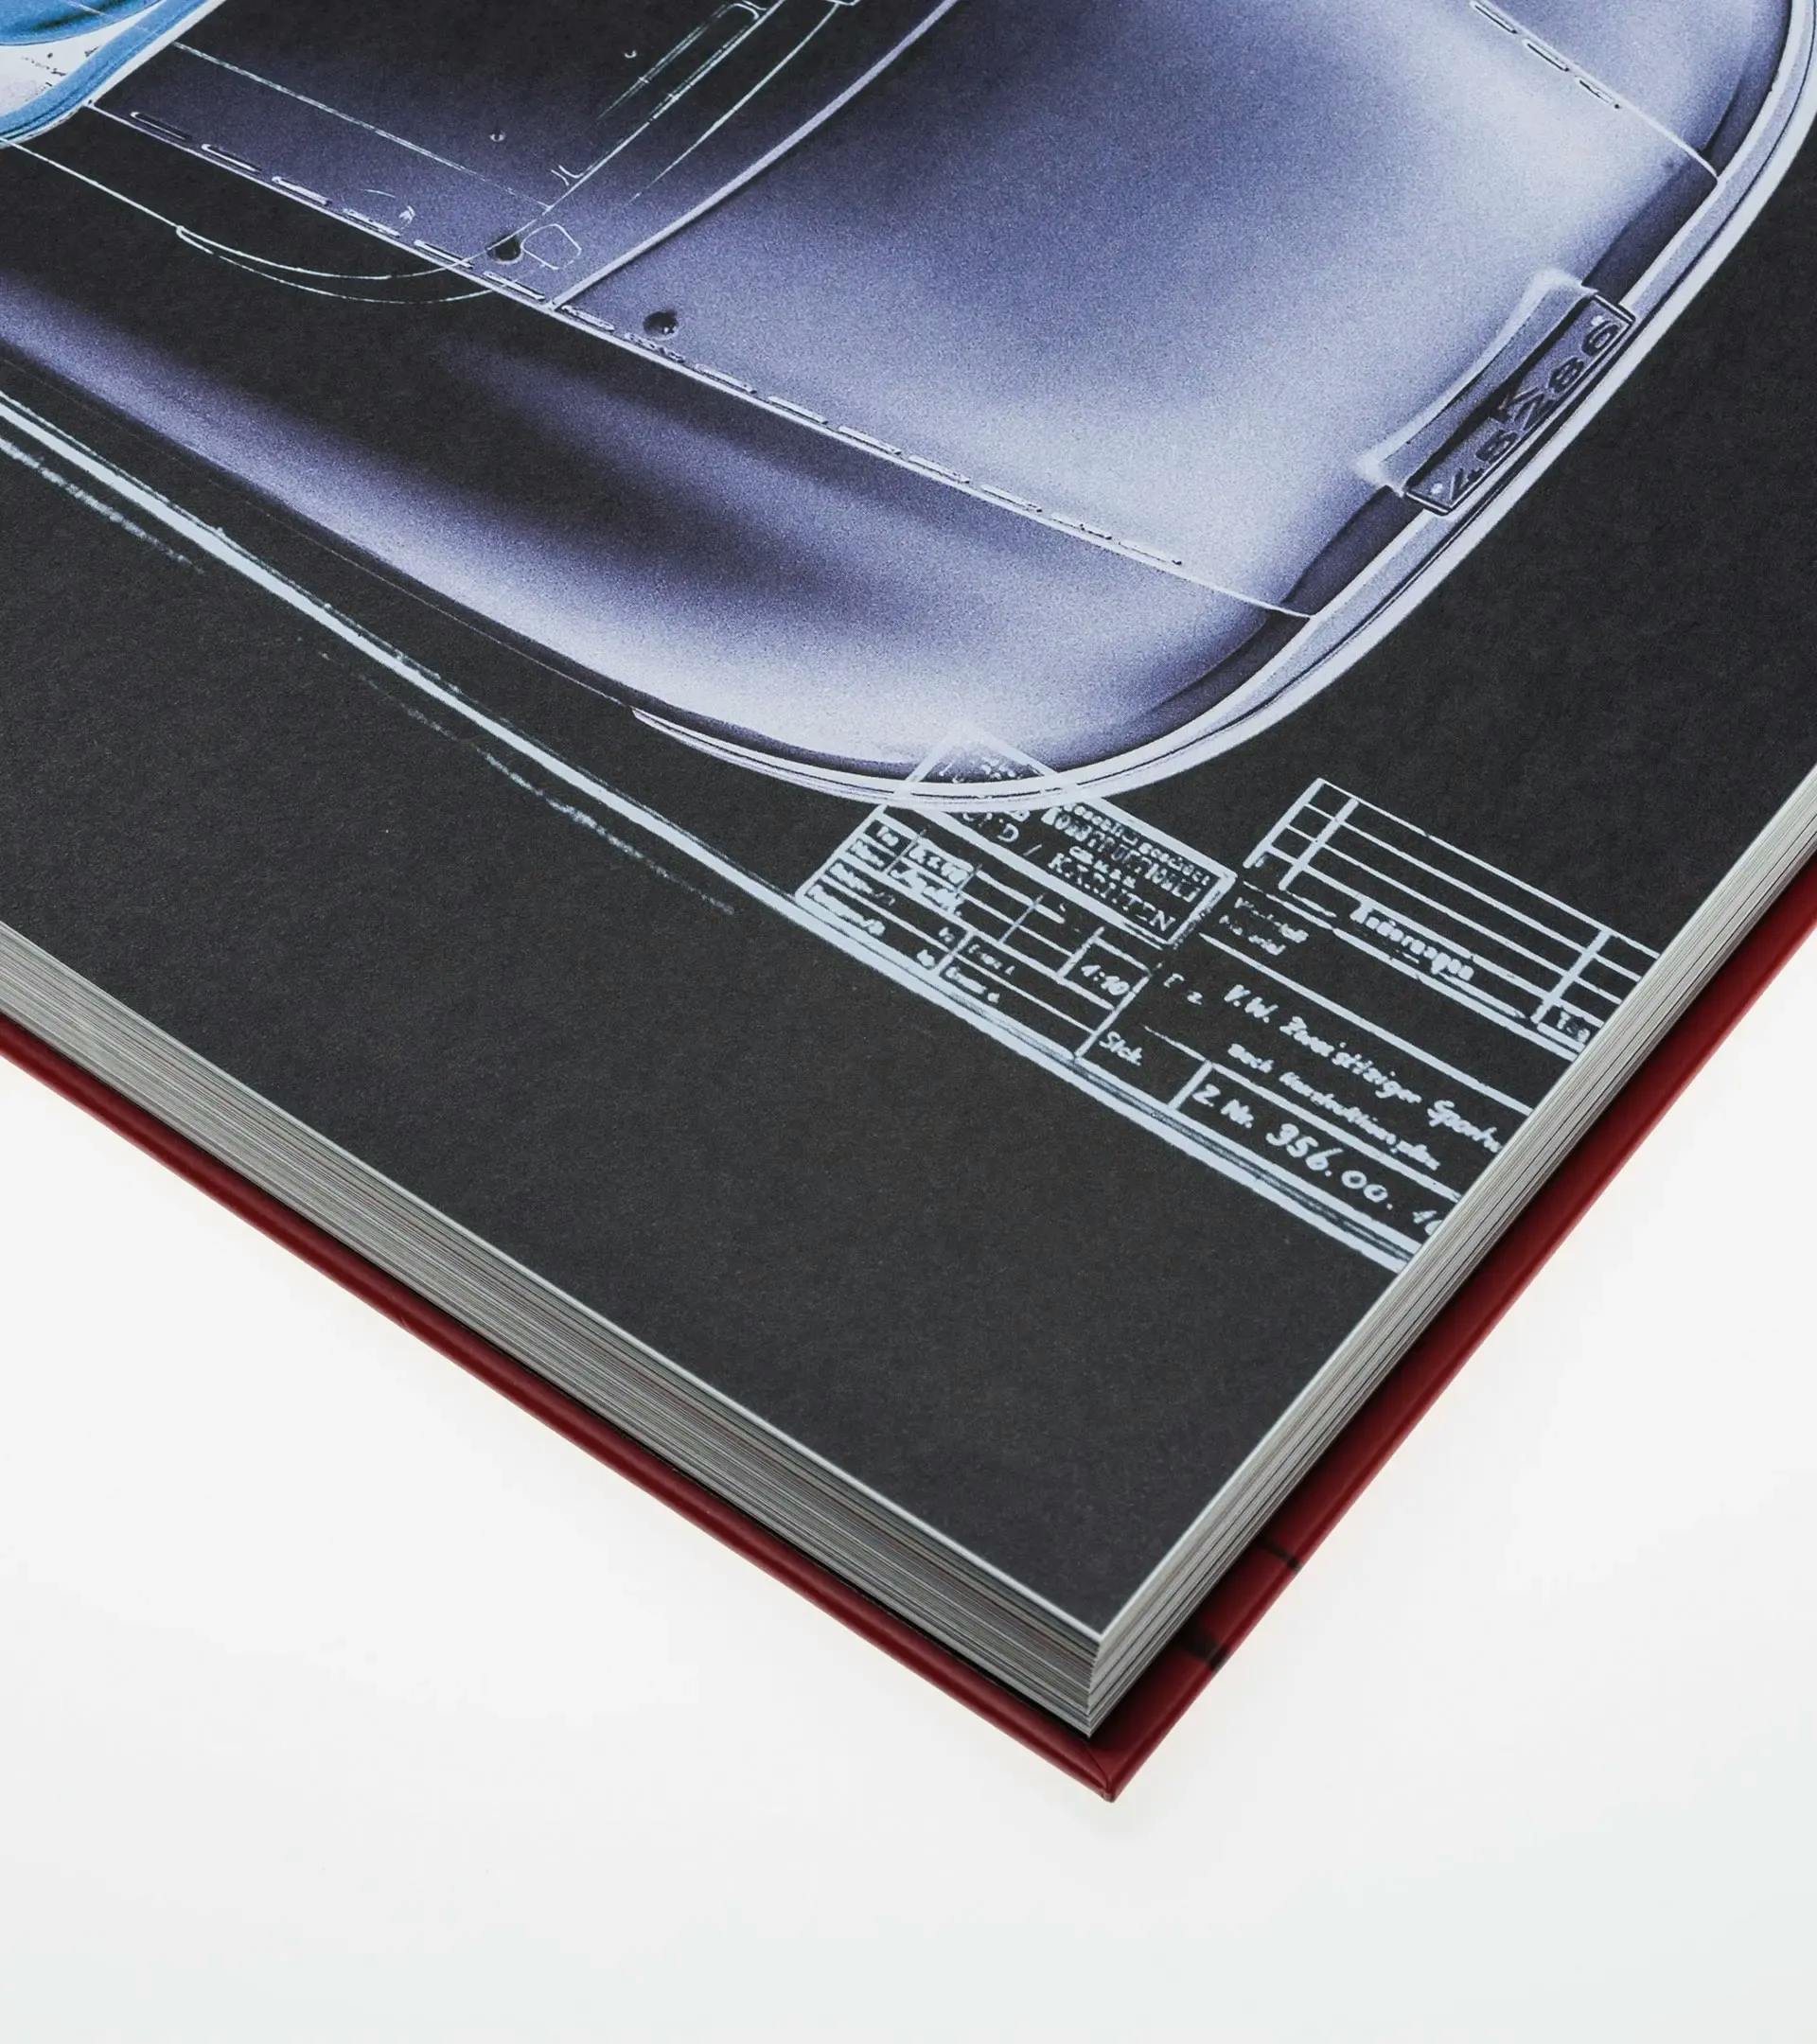 The Porsche Book - Les meilleures images de Porsche par Frank M. Orel 2